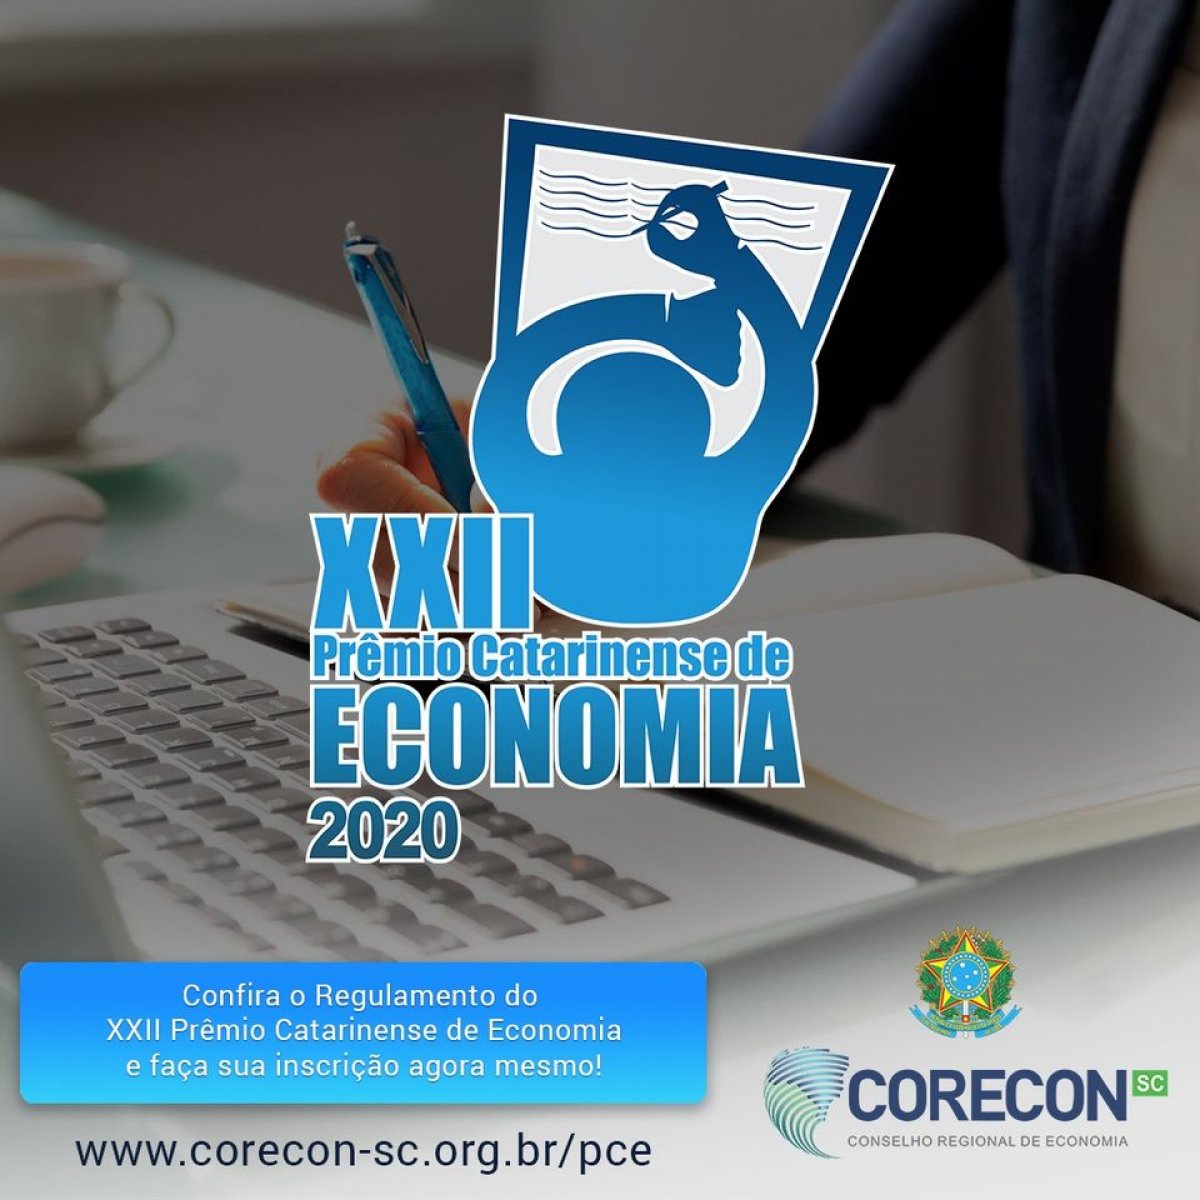 Último dias para inscrição no 22º Prêmio Caarinense de Economia - Corecon/SC